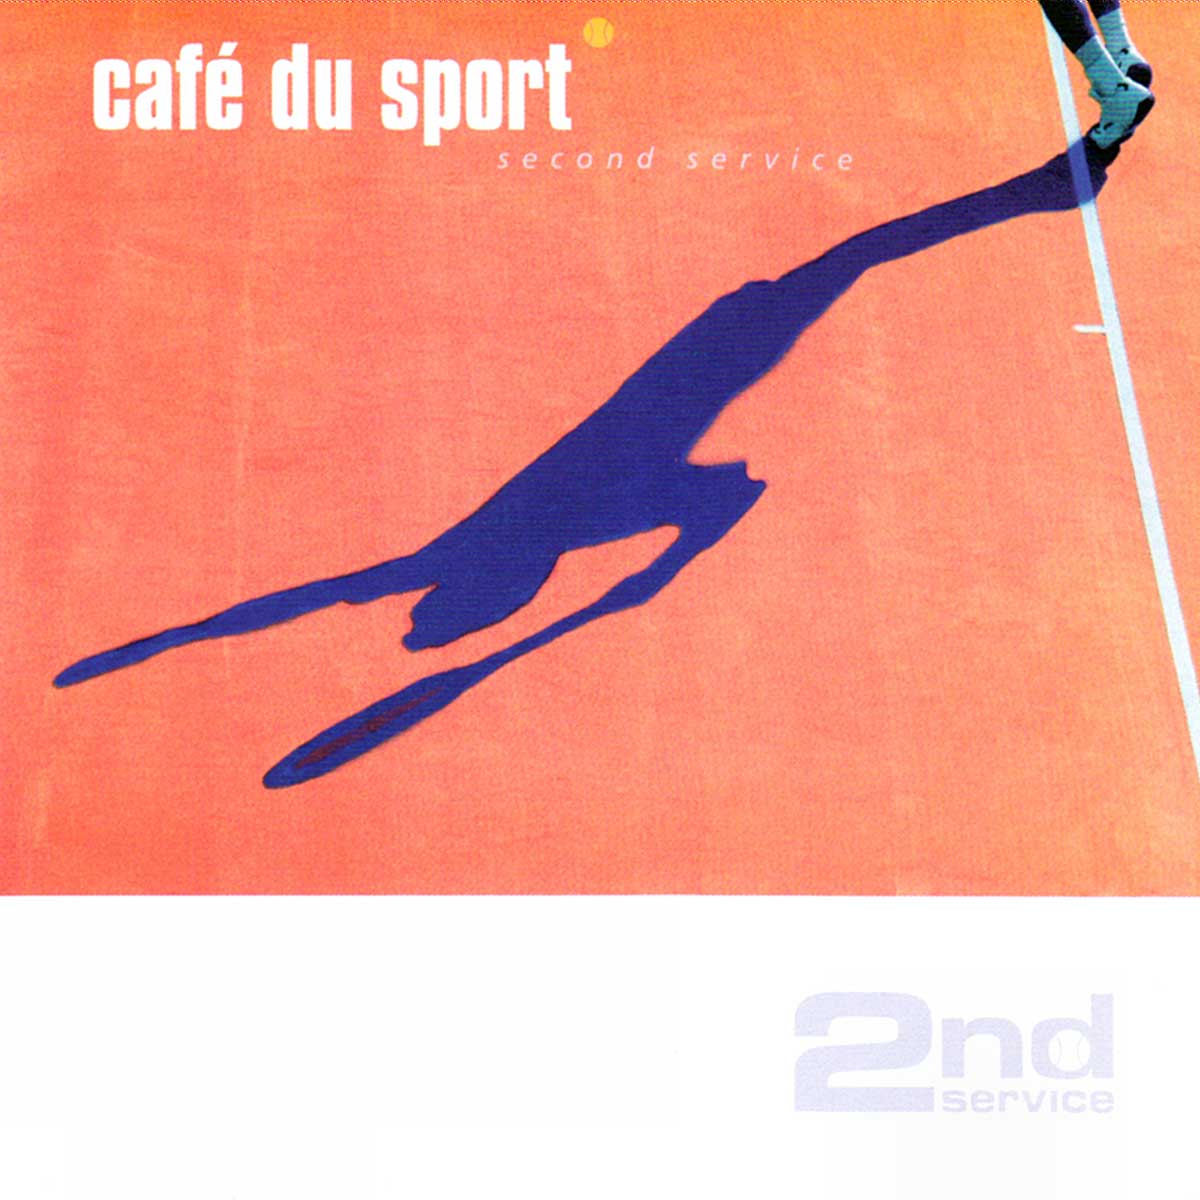 Cafe du Sport Second Service